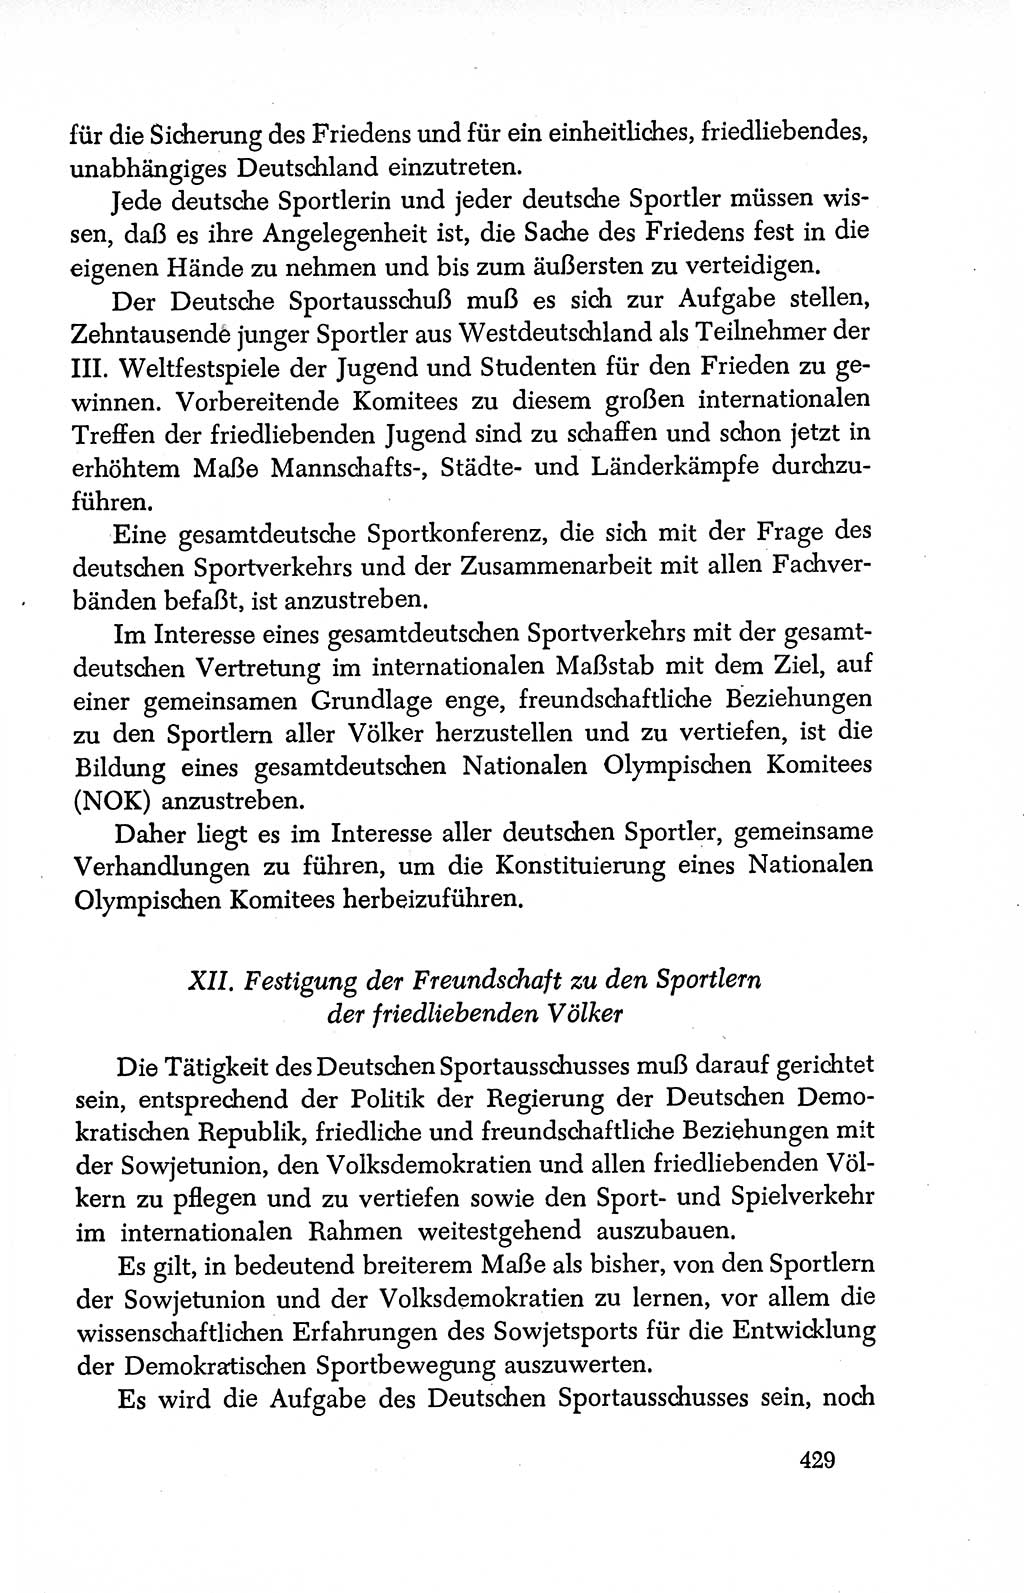 Dokumente der Sozialistischen Einheitspartei Deutschlands (SED) [Deutsche Demokratische Republik (DDR)] 1950-1952, Seite 429 (Dok. SED DDR 1950-1952, S. 429)